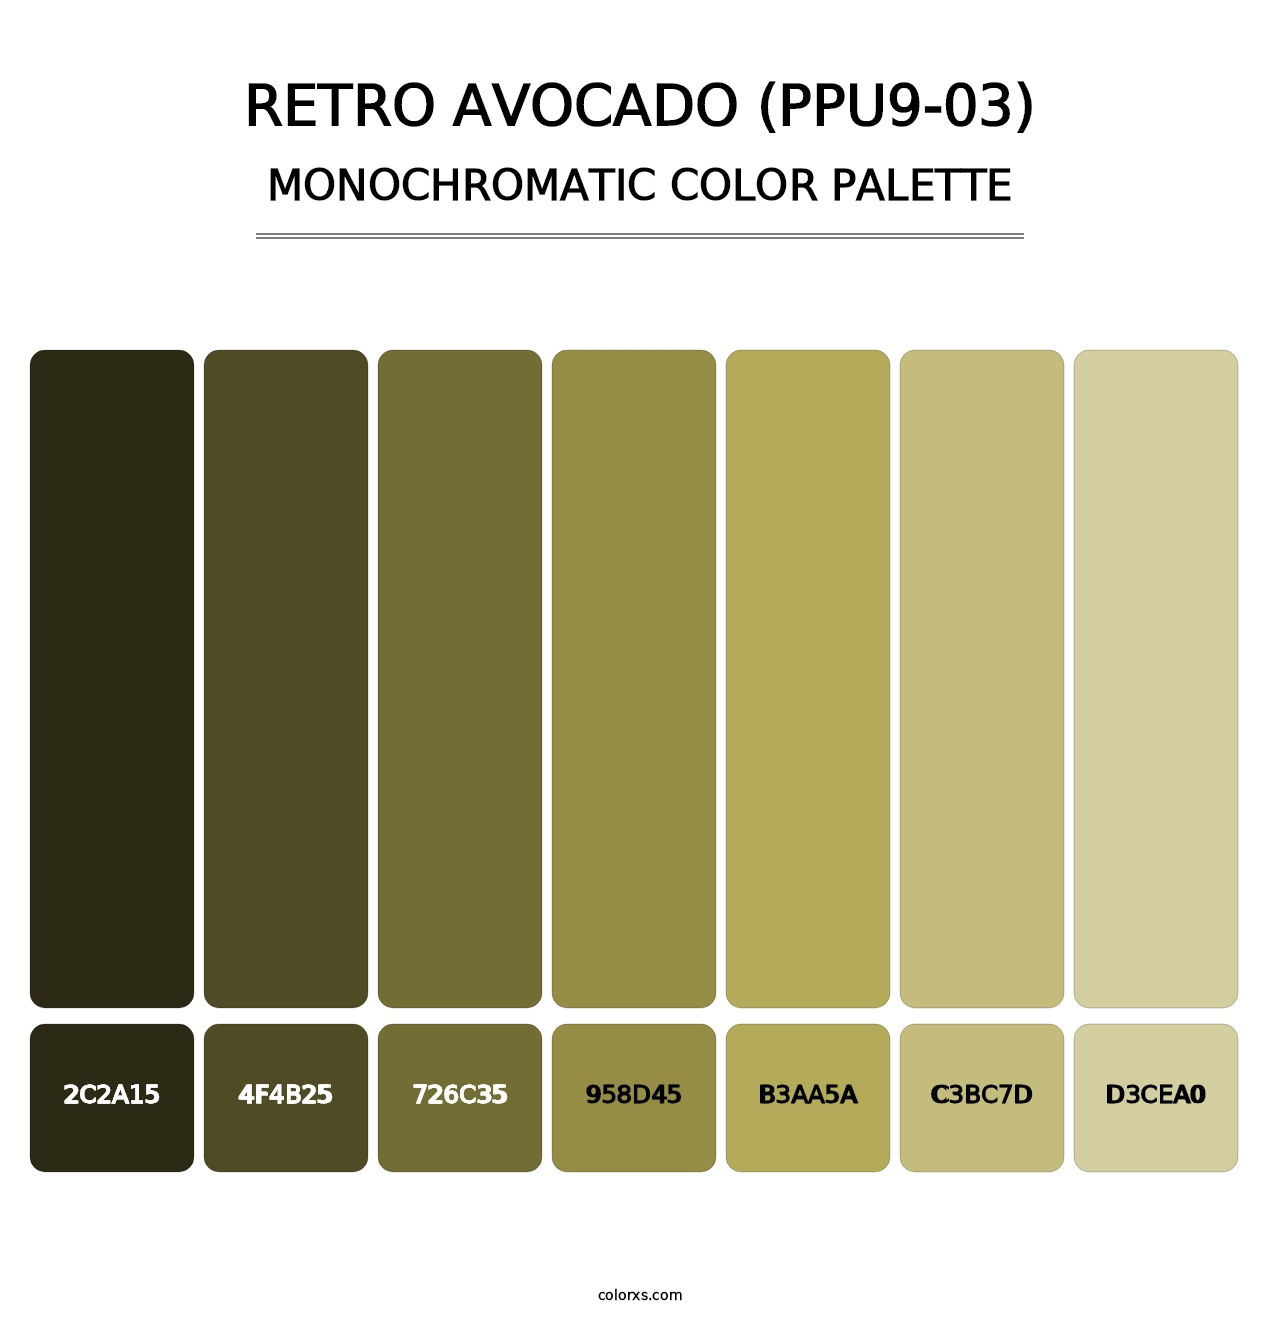 Retro Avocado (PPU9-03) - Monochromatic Color Palette